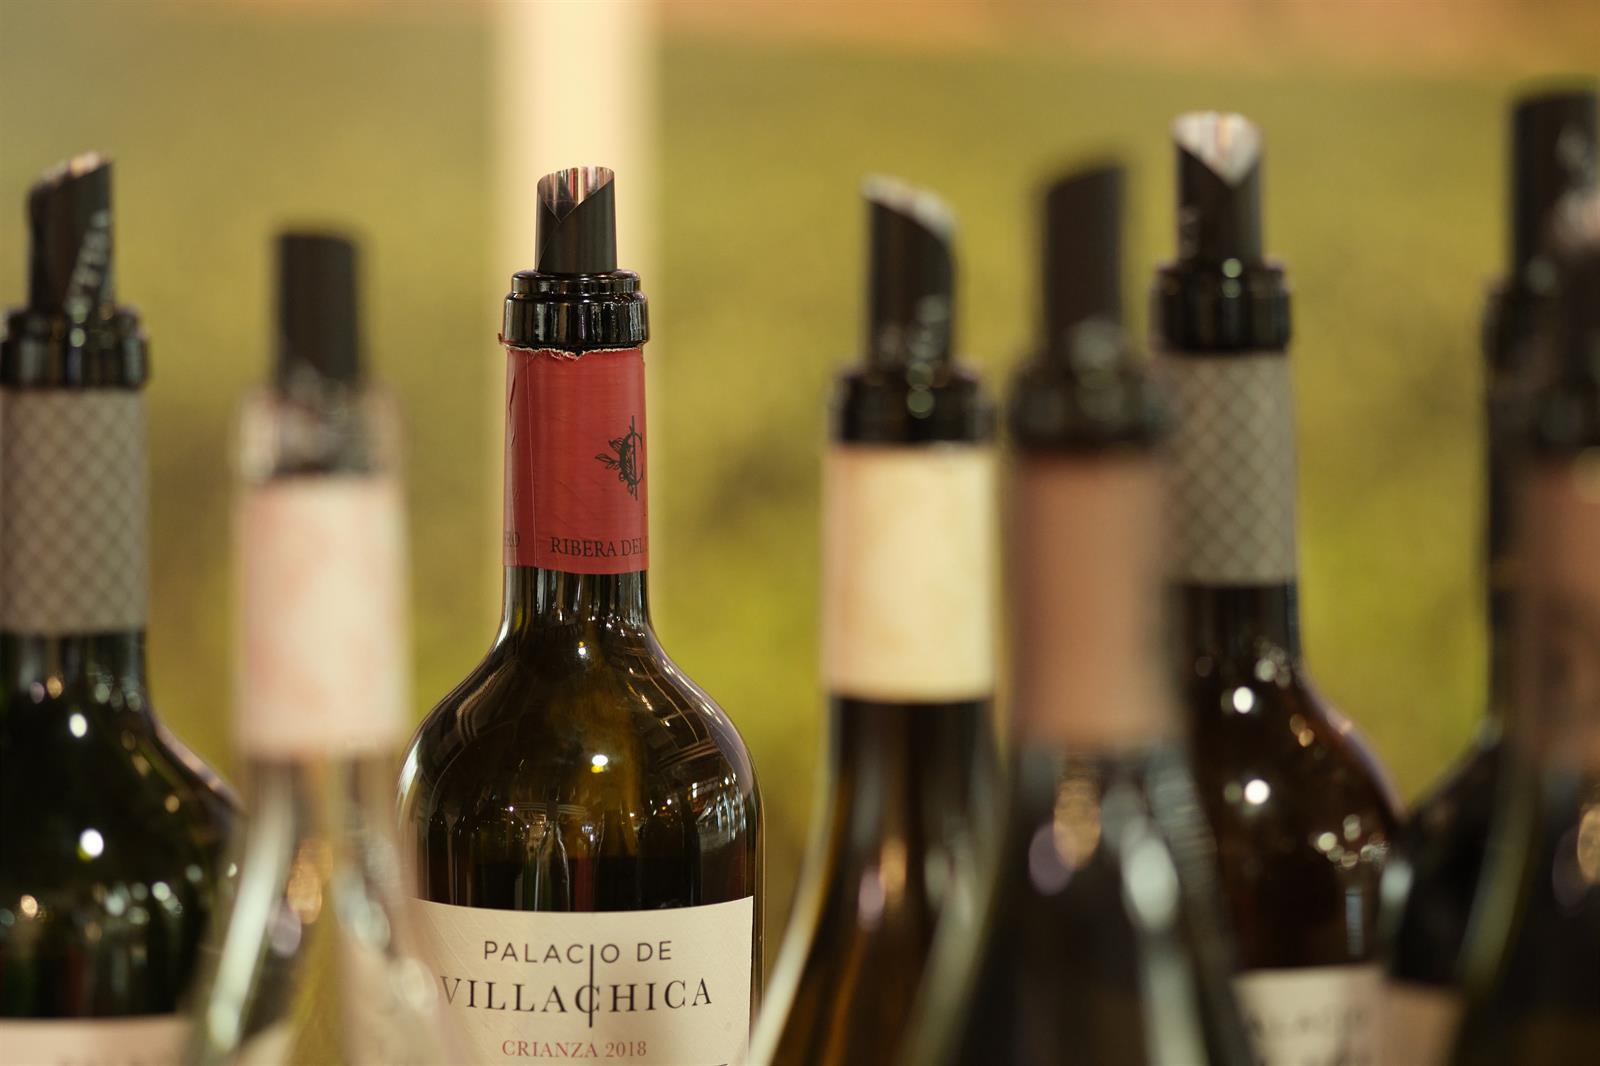 Spagna, Italia e Portogallo uniscono le forze per incoraggiare un consumo moderato di vino